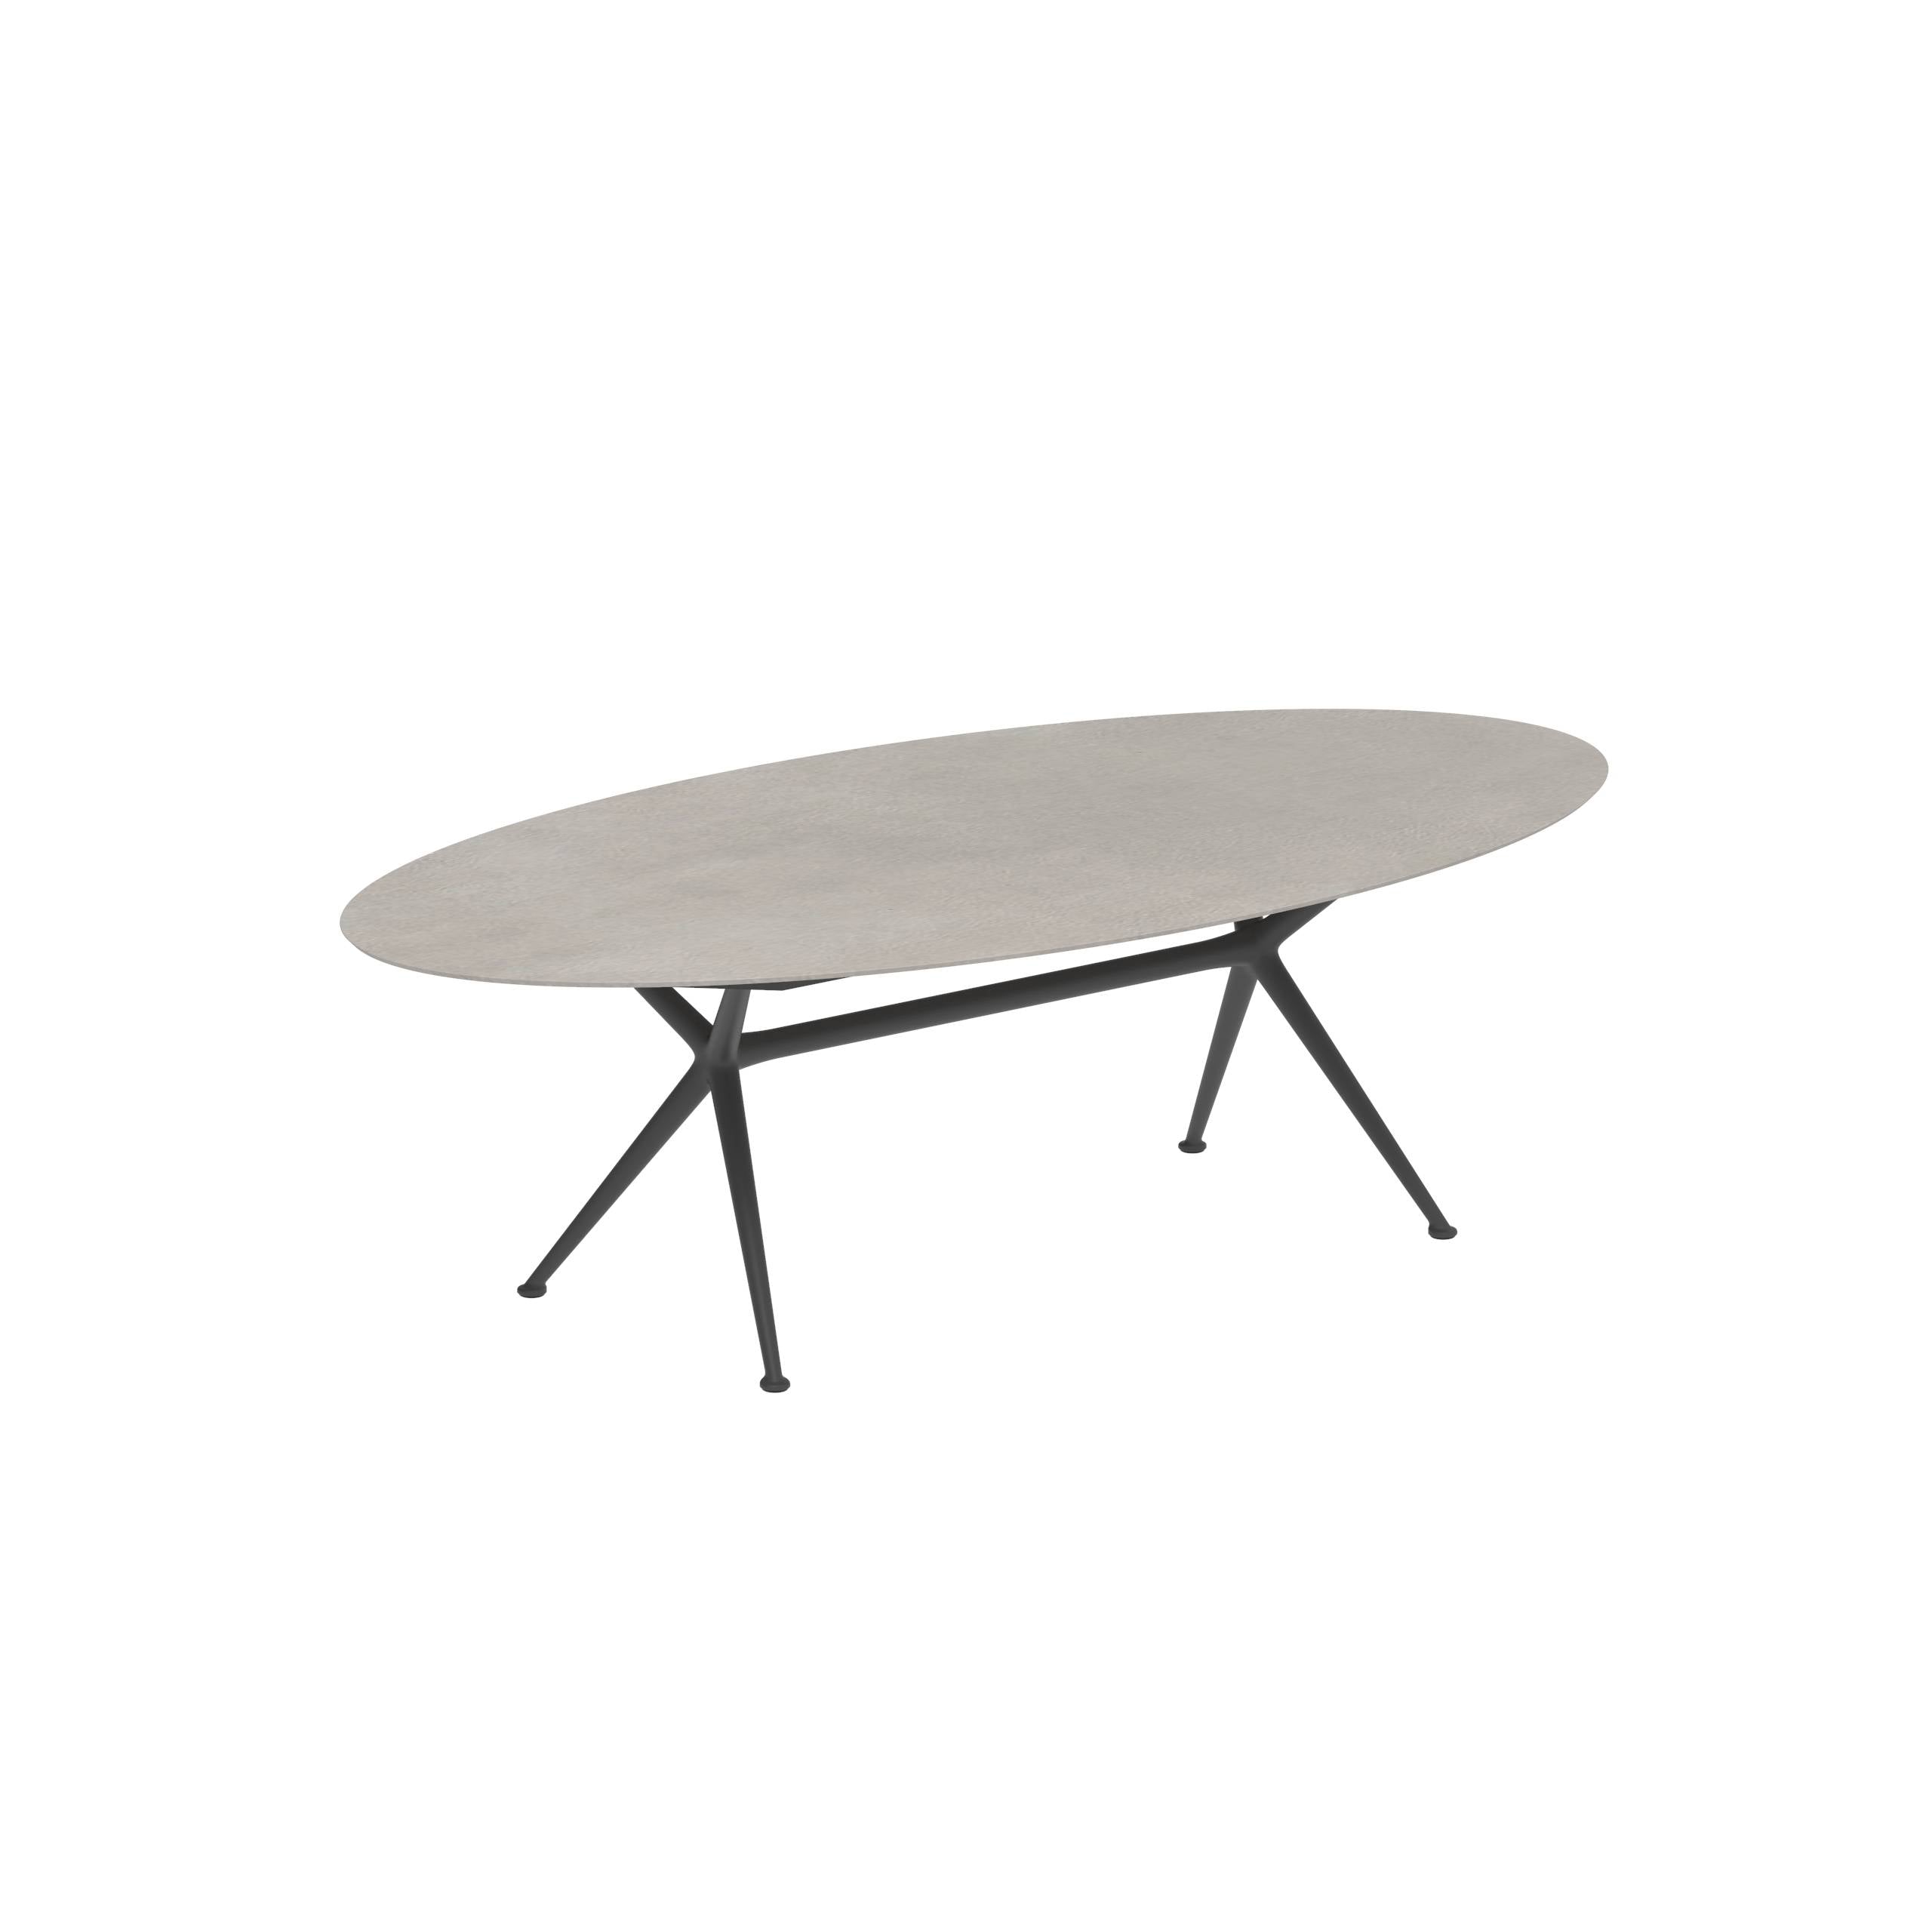 Exes Table Ellipse 250x130cm Alu Legs Anthracite - Table Top Ceramic Cemento Luminoso